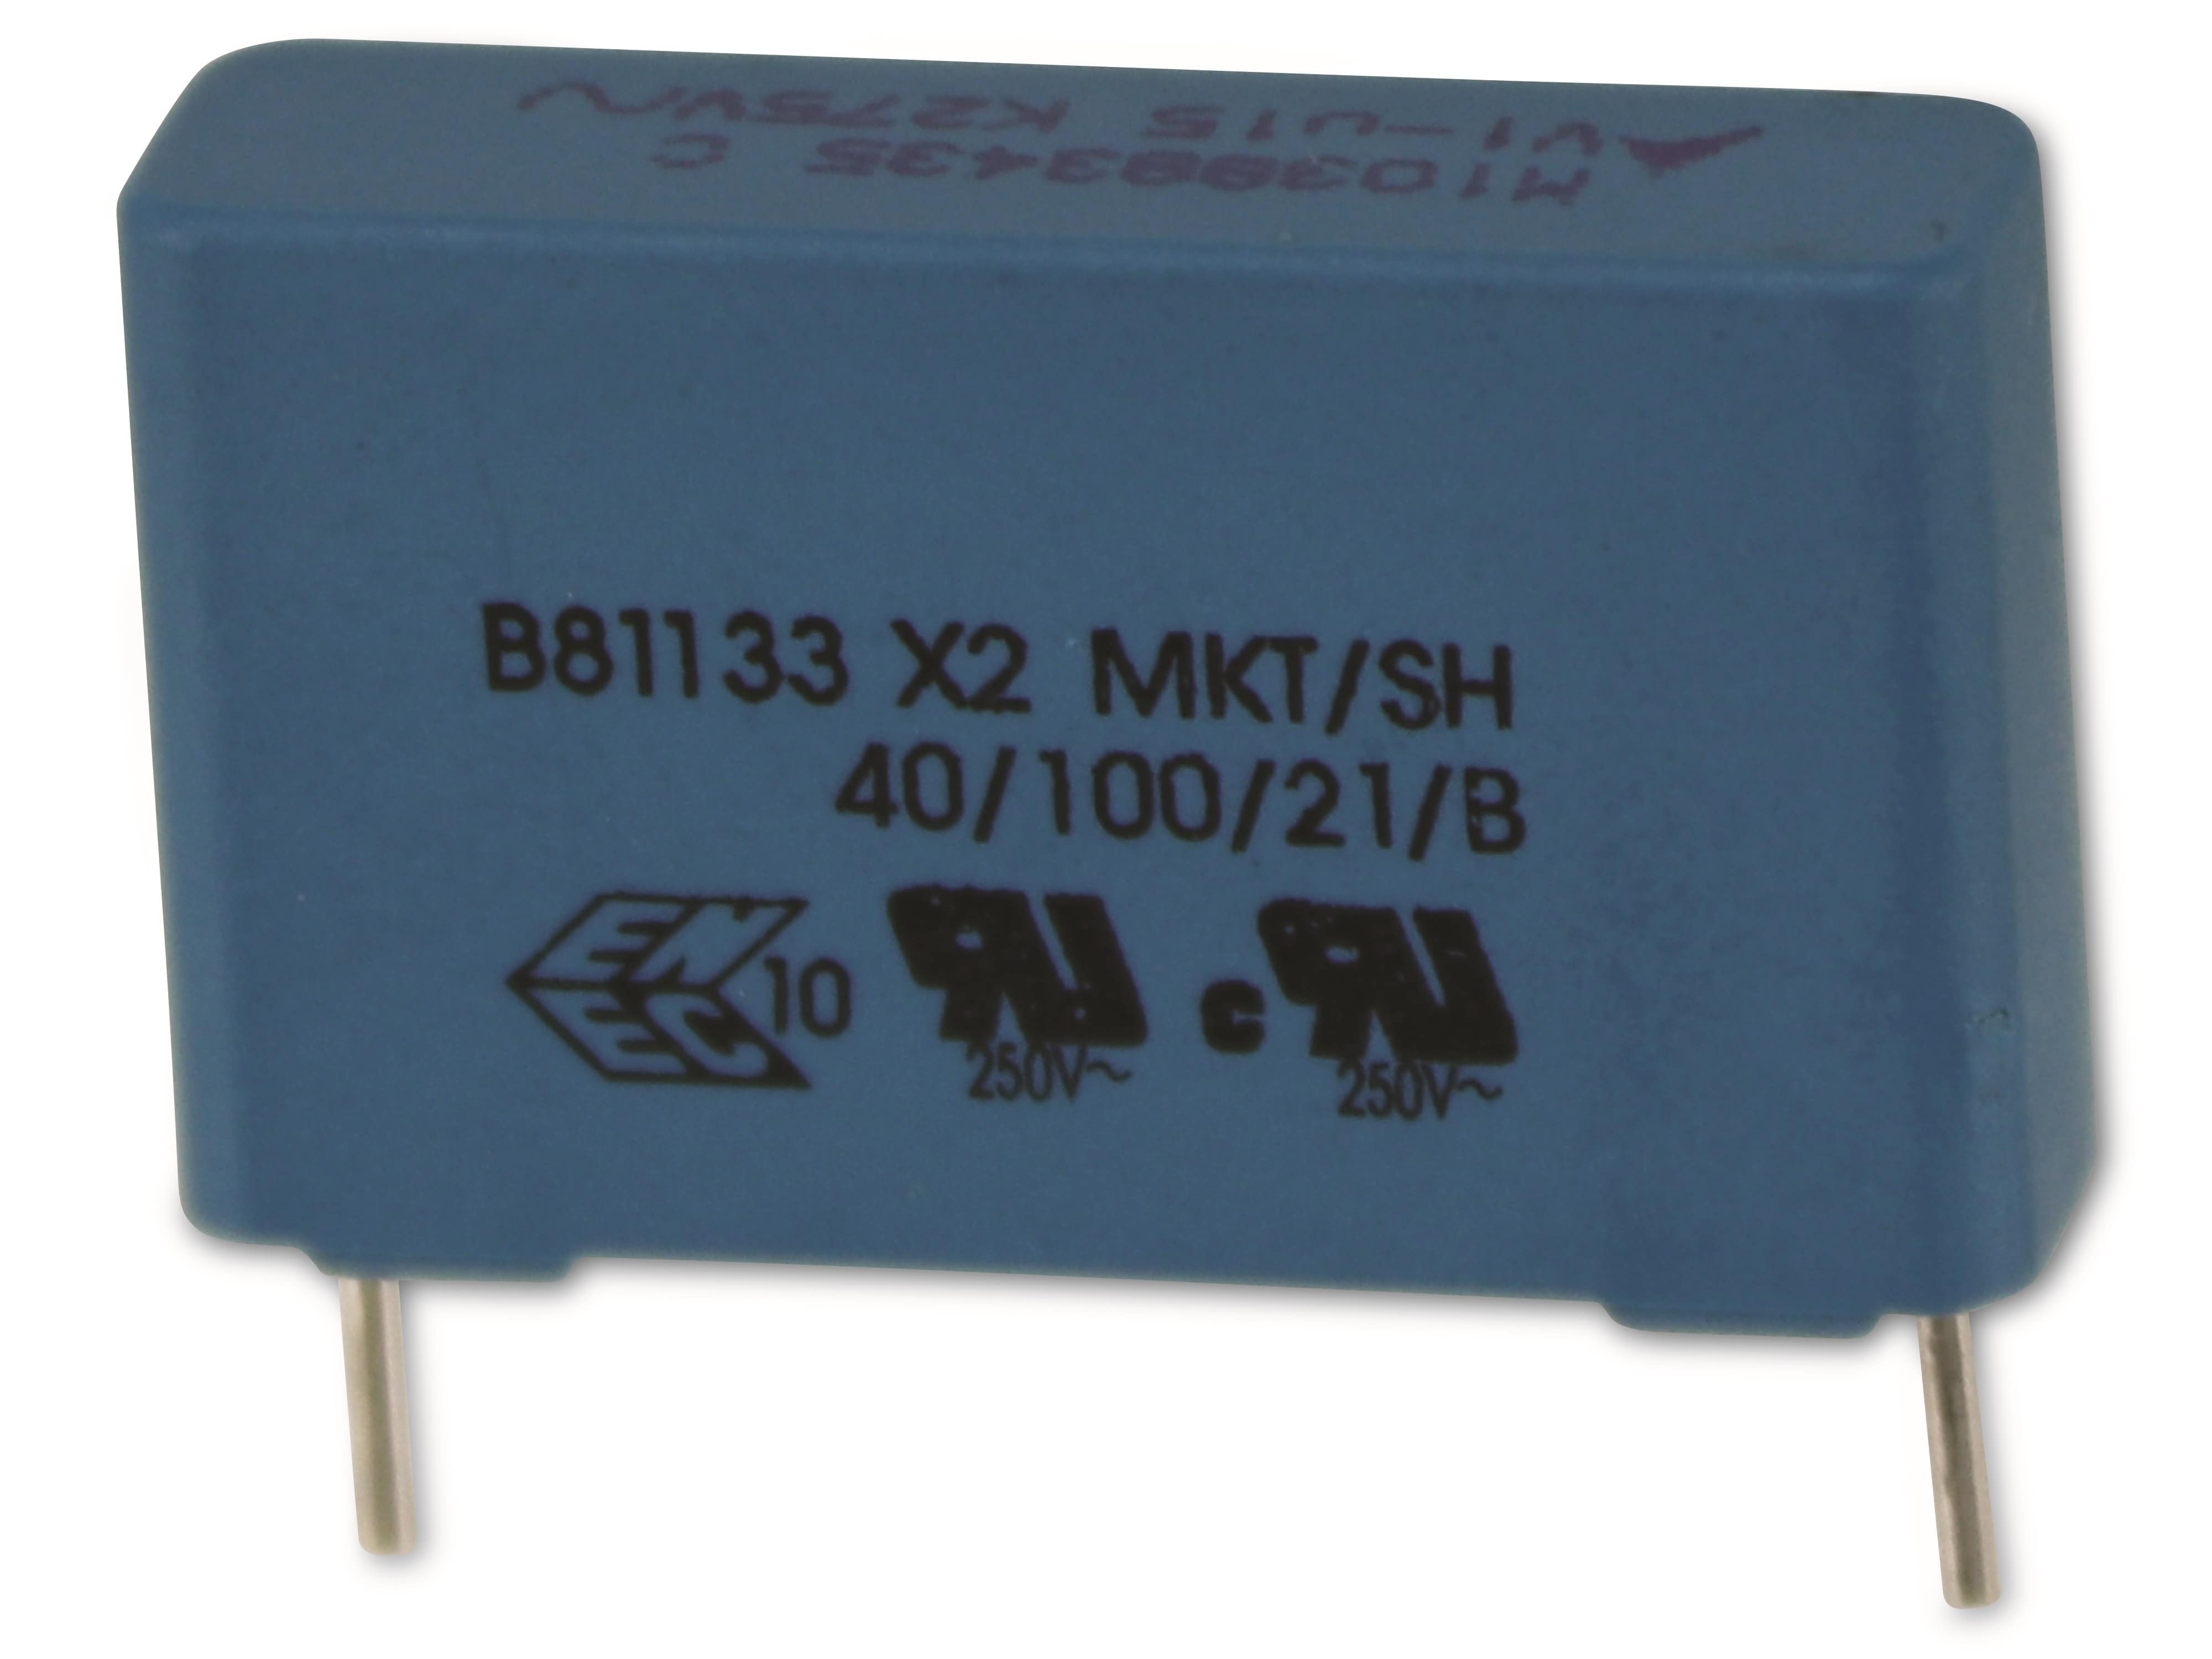 EPCOS Funkentstörkondensator B81133, 0,15 µF, 275 V~